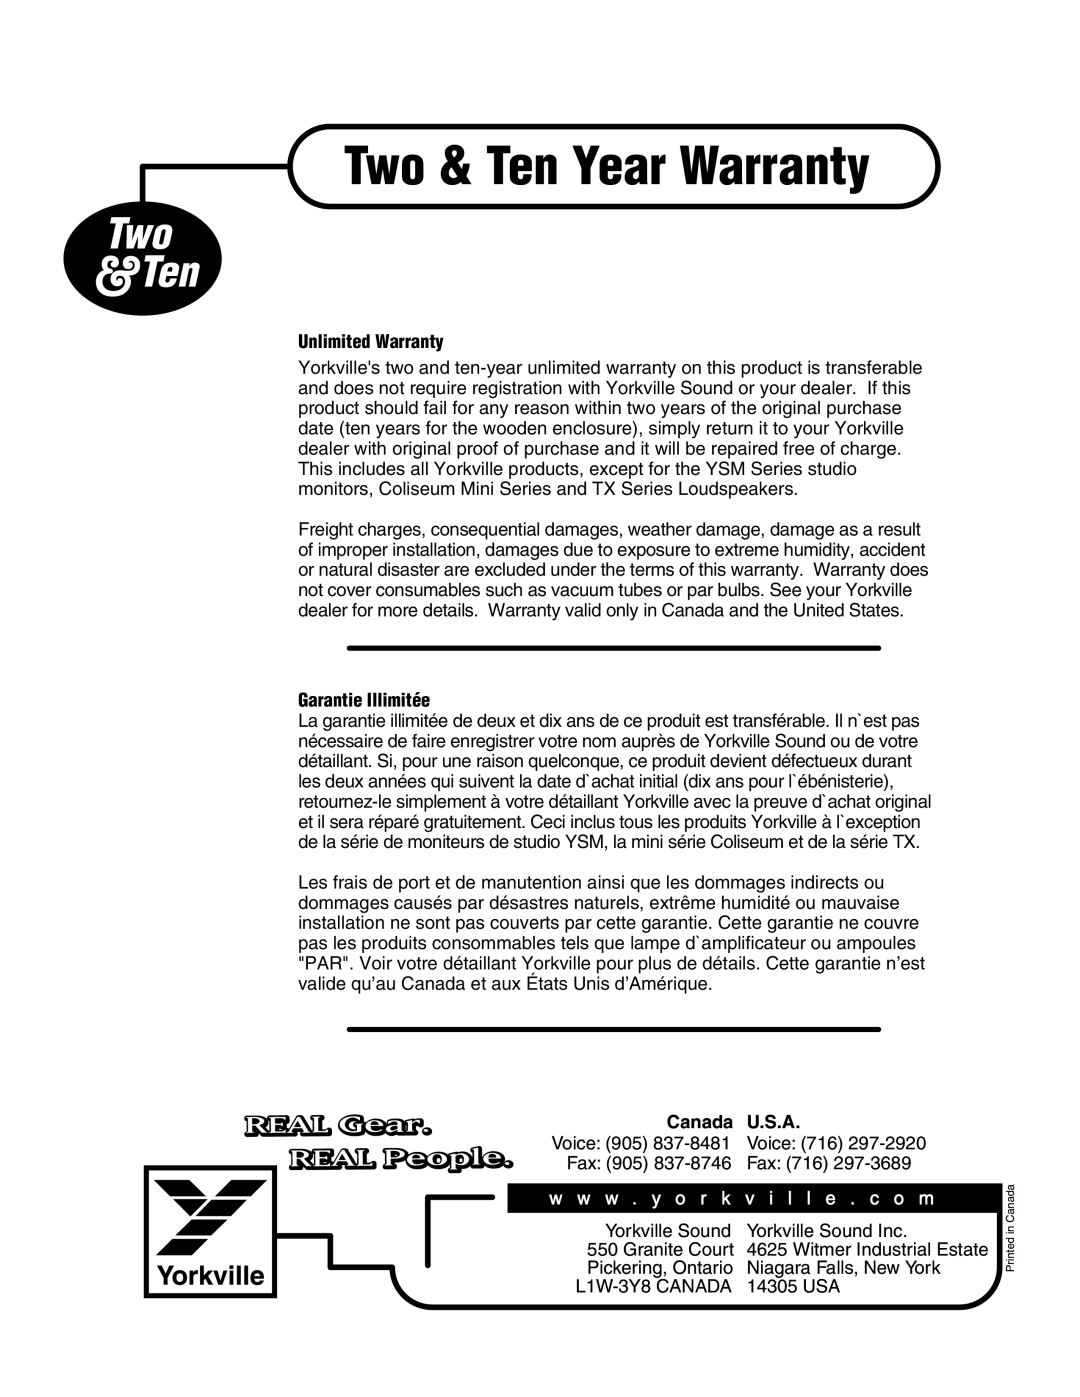 Elite ES700P Unlimited Warranty, Garantie Illimitée, Canada, U.S.A, Two & Ten Year Warranty, Two &Ten, REAL Gear 